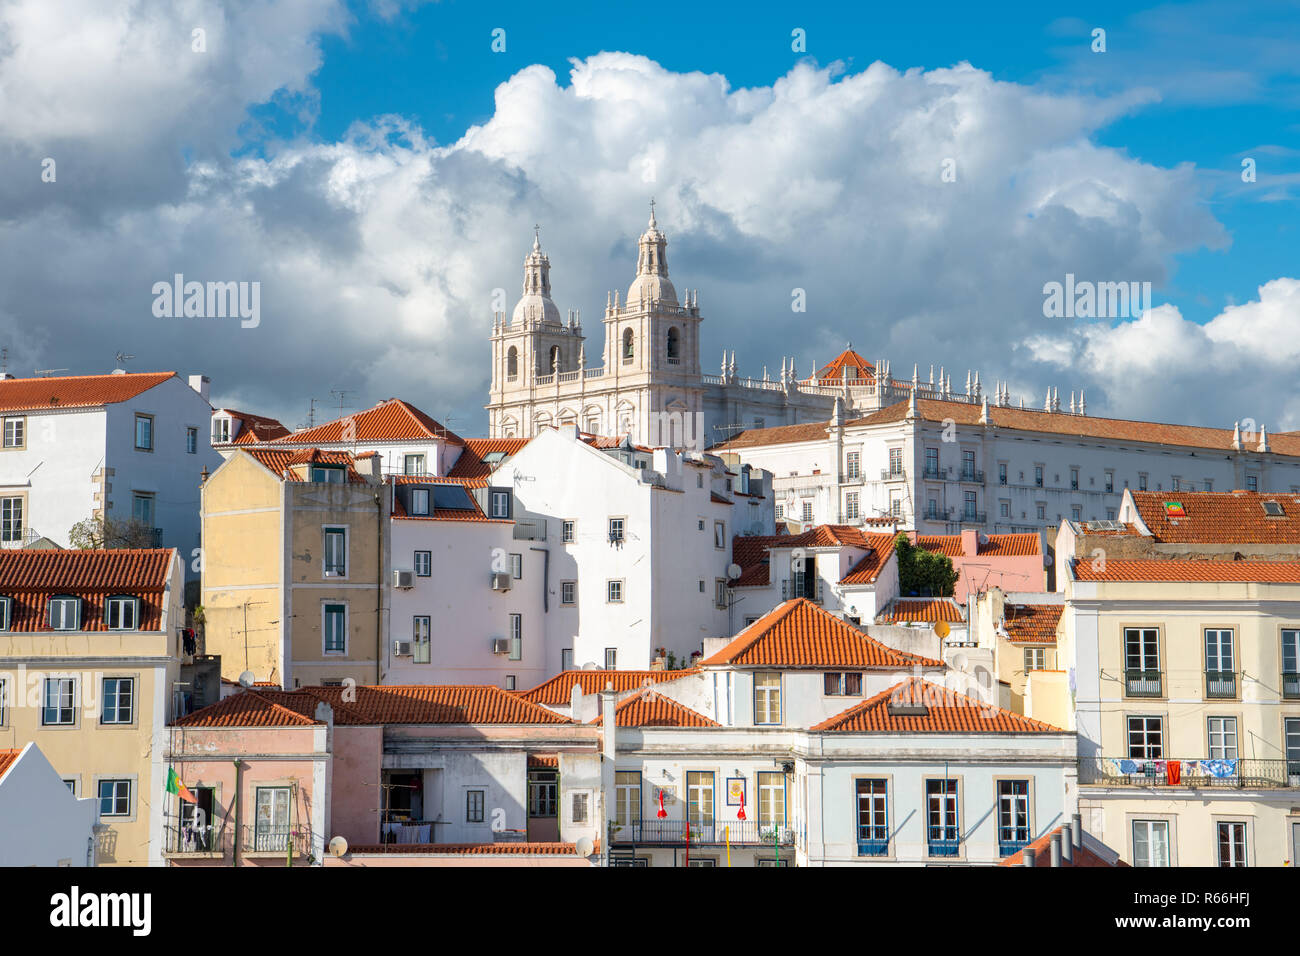 Mosteiro de Sao Vicente de Fora chiesa e monastero sopra i tetti in tegole rosse e gli edifici colorati del quartiere di Alfama a Lisbona, Portogallo Foto Stock